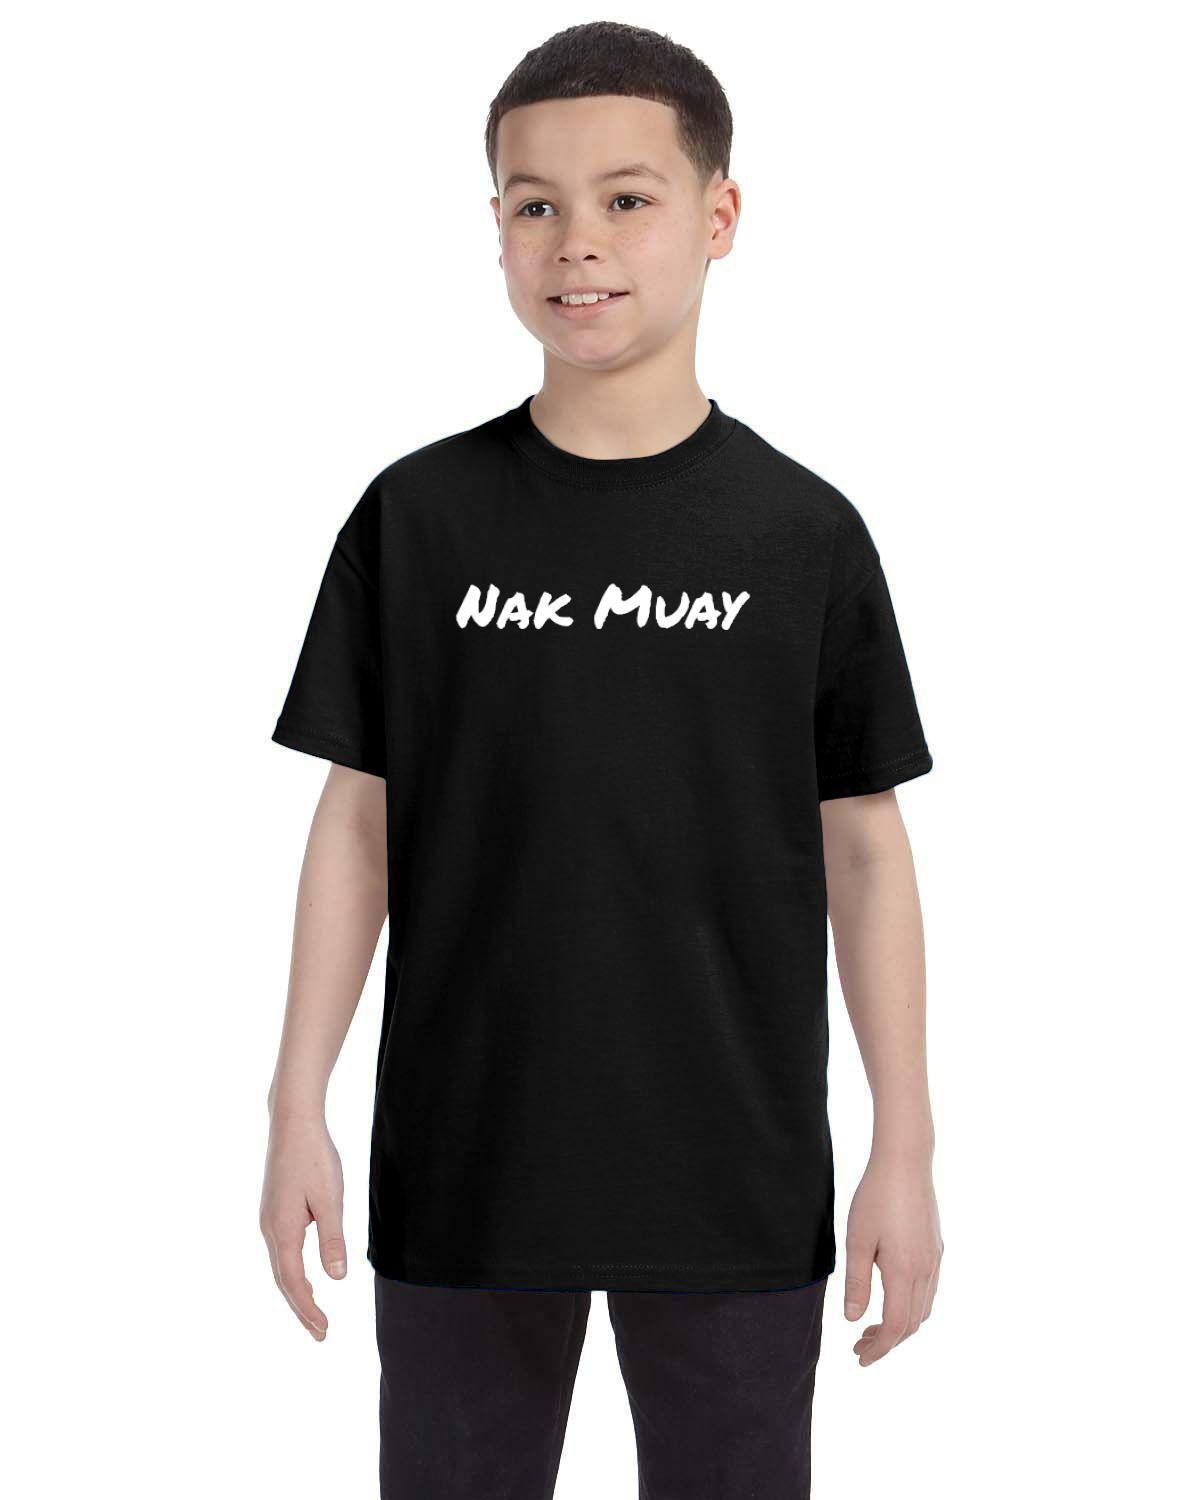 Nak Muay Kid's T-Shirt